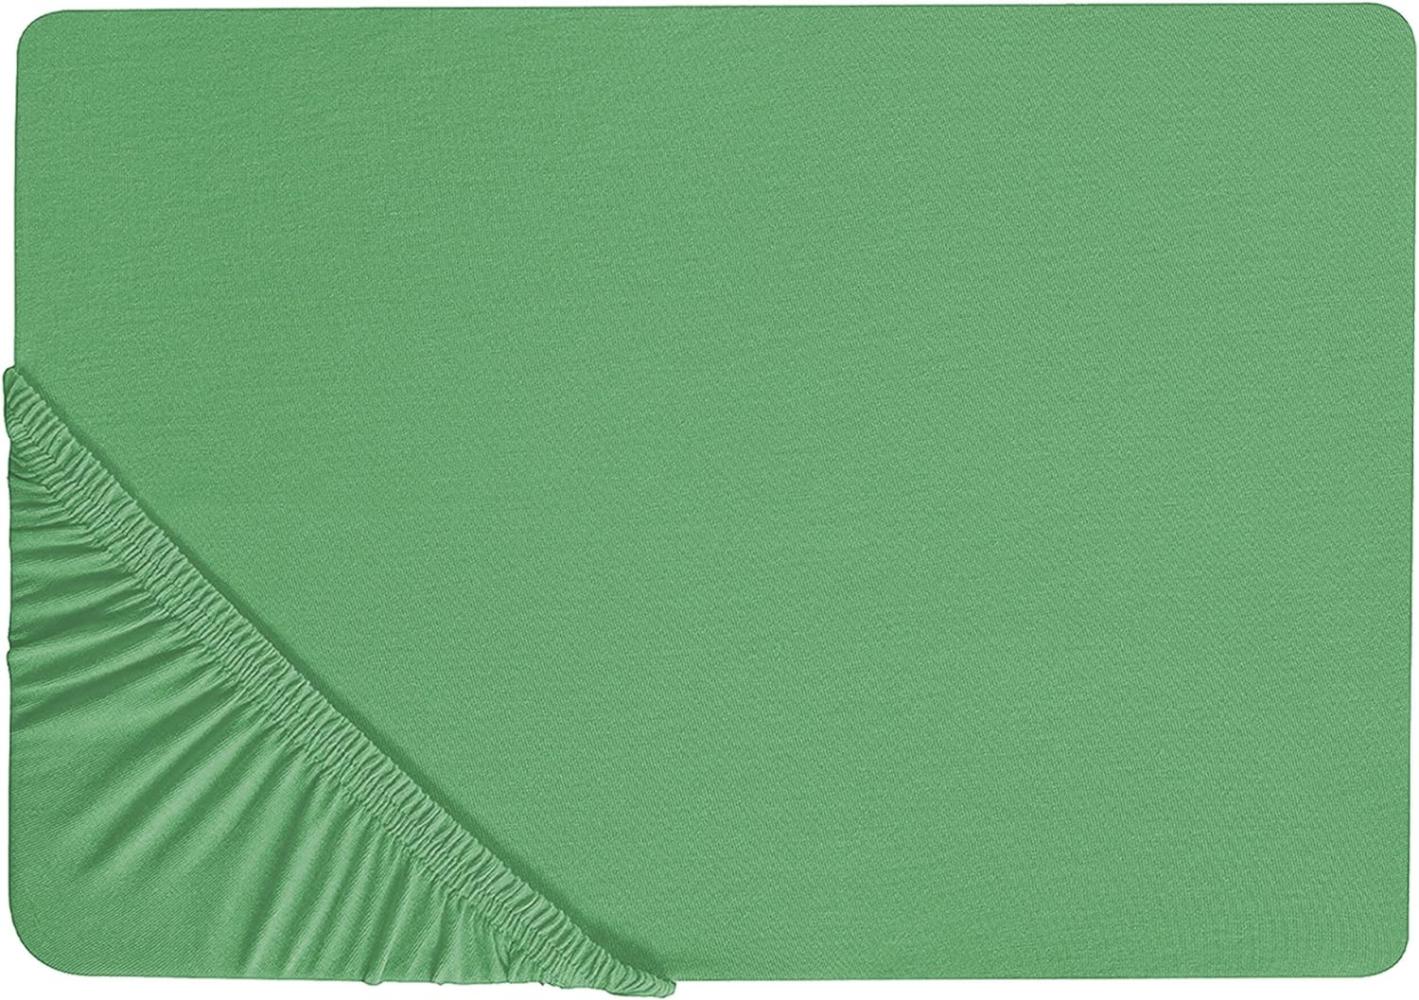 Spannbettlaken Baumwolle grün 180 x 200 cm JANBU Bild 1